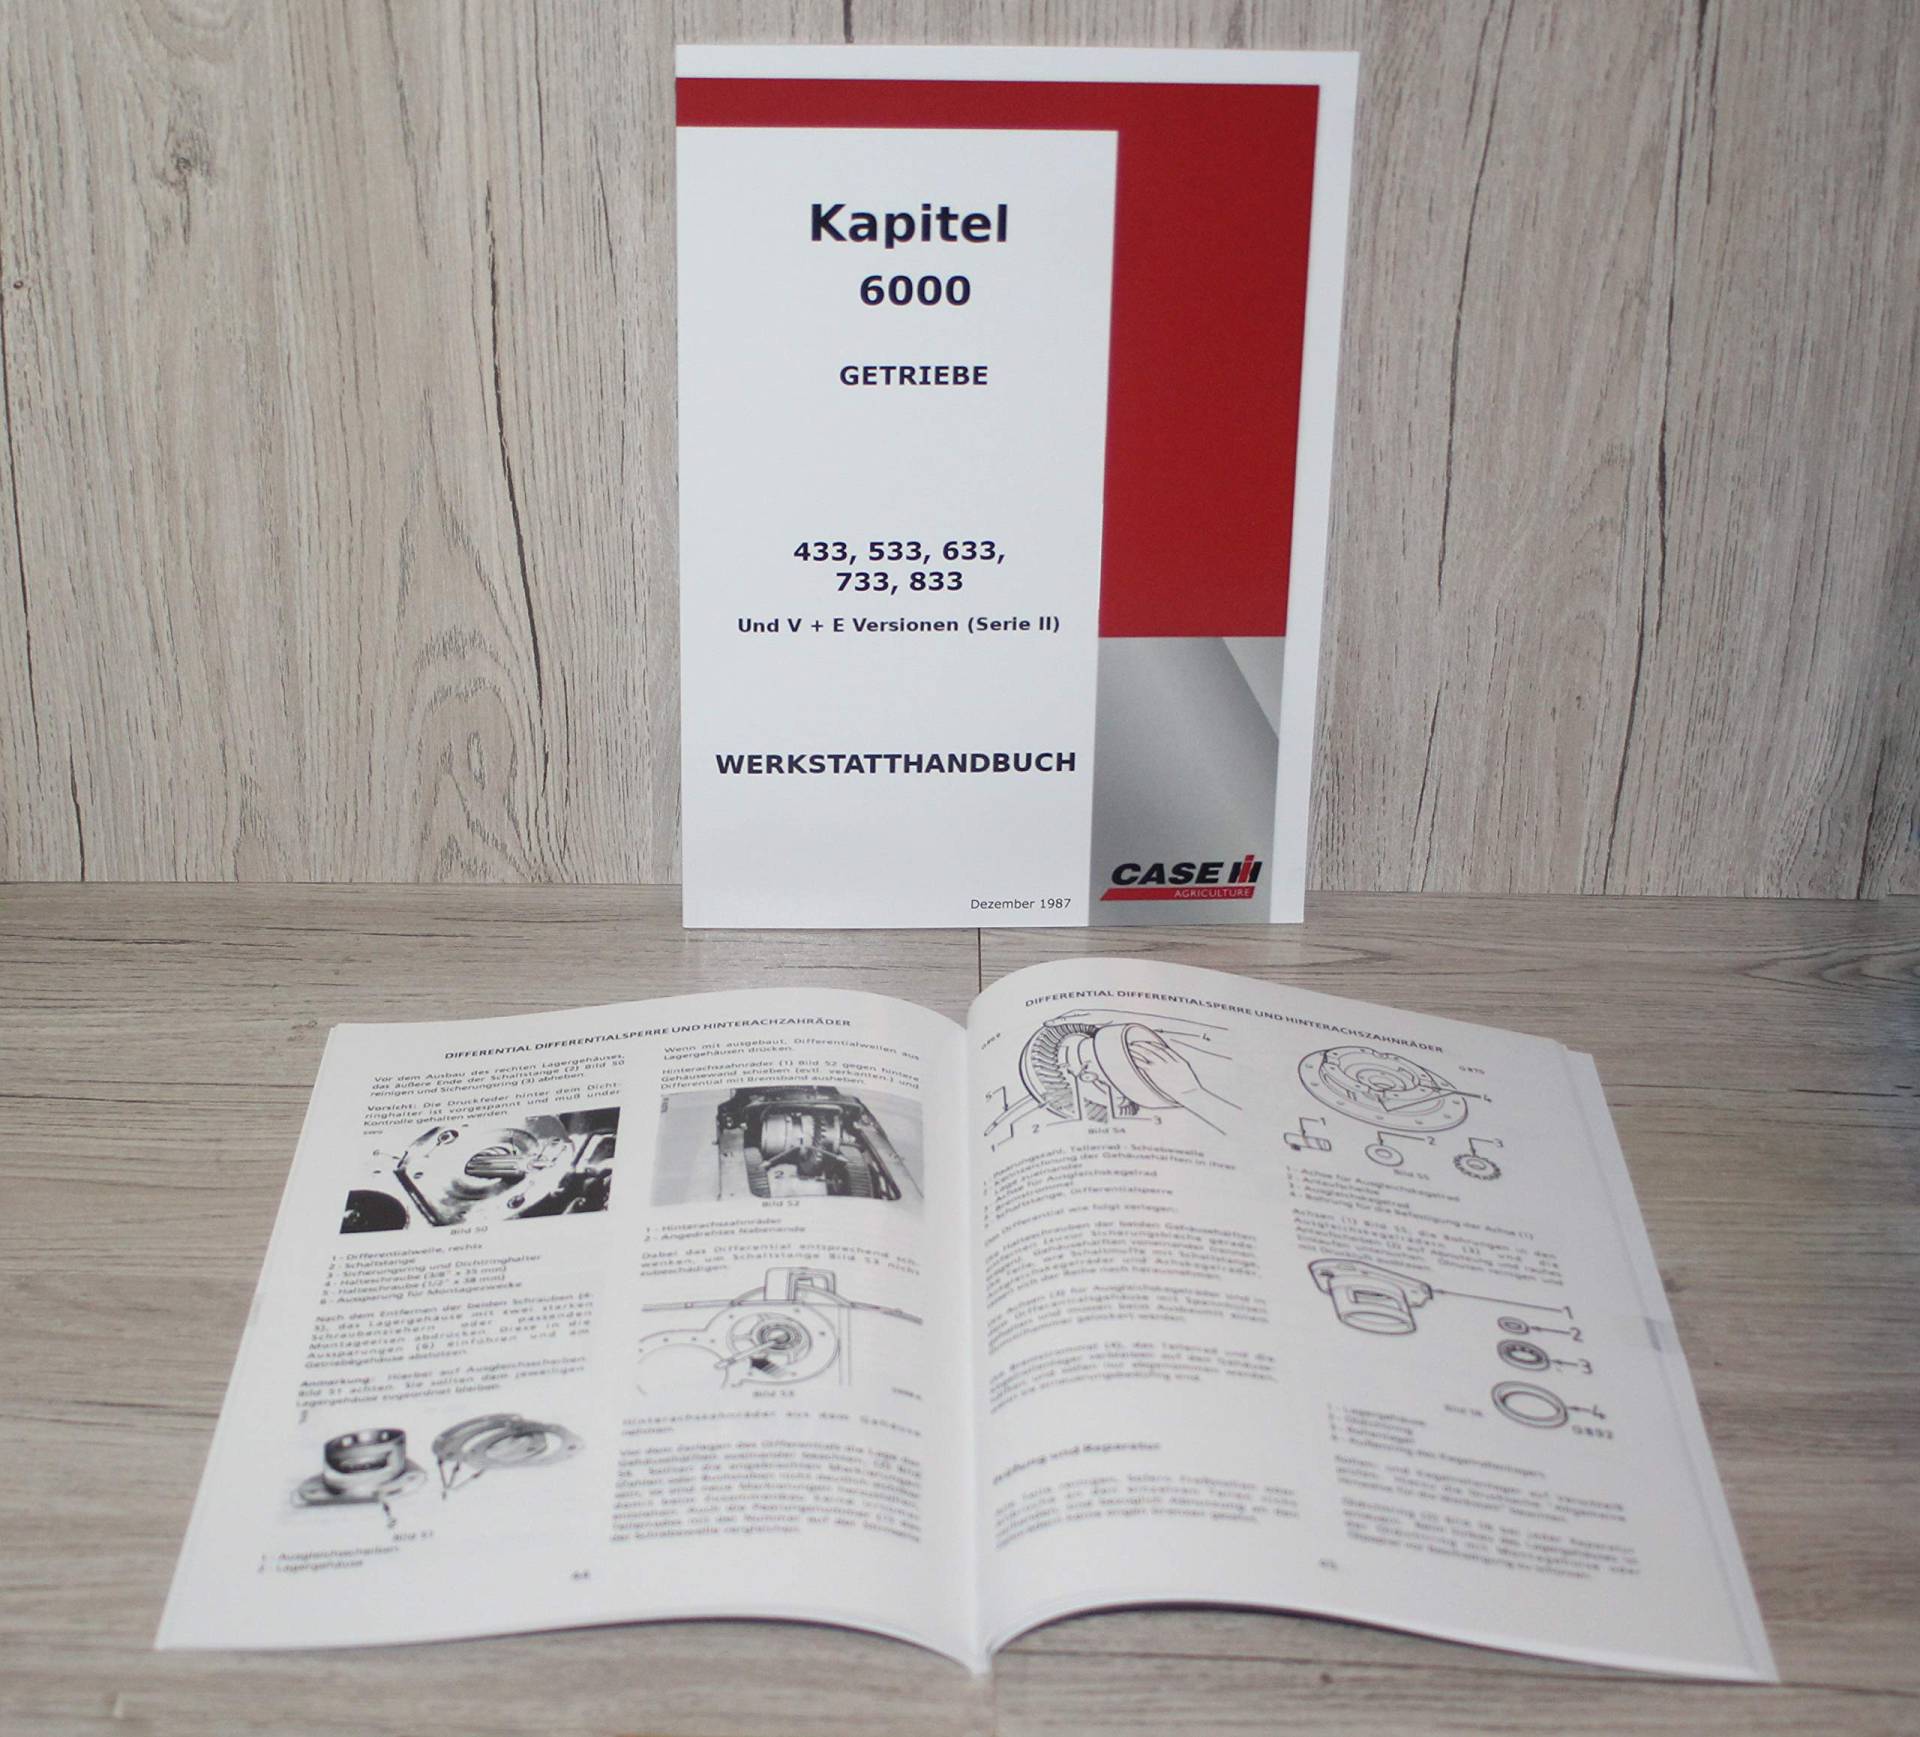 IHC Case Werkstatthandbuch Traktor Getriebe 433 533 633 733 833 und V+E (Serie II) Kapitel 600 Getriebe von Eil Bulldog Versand